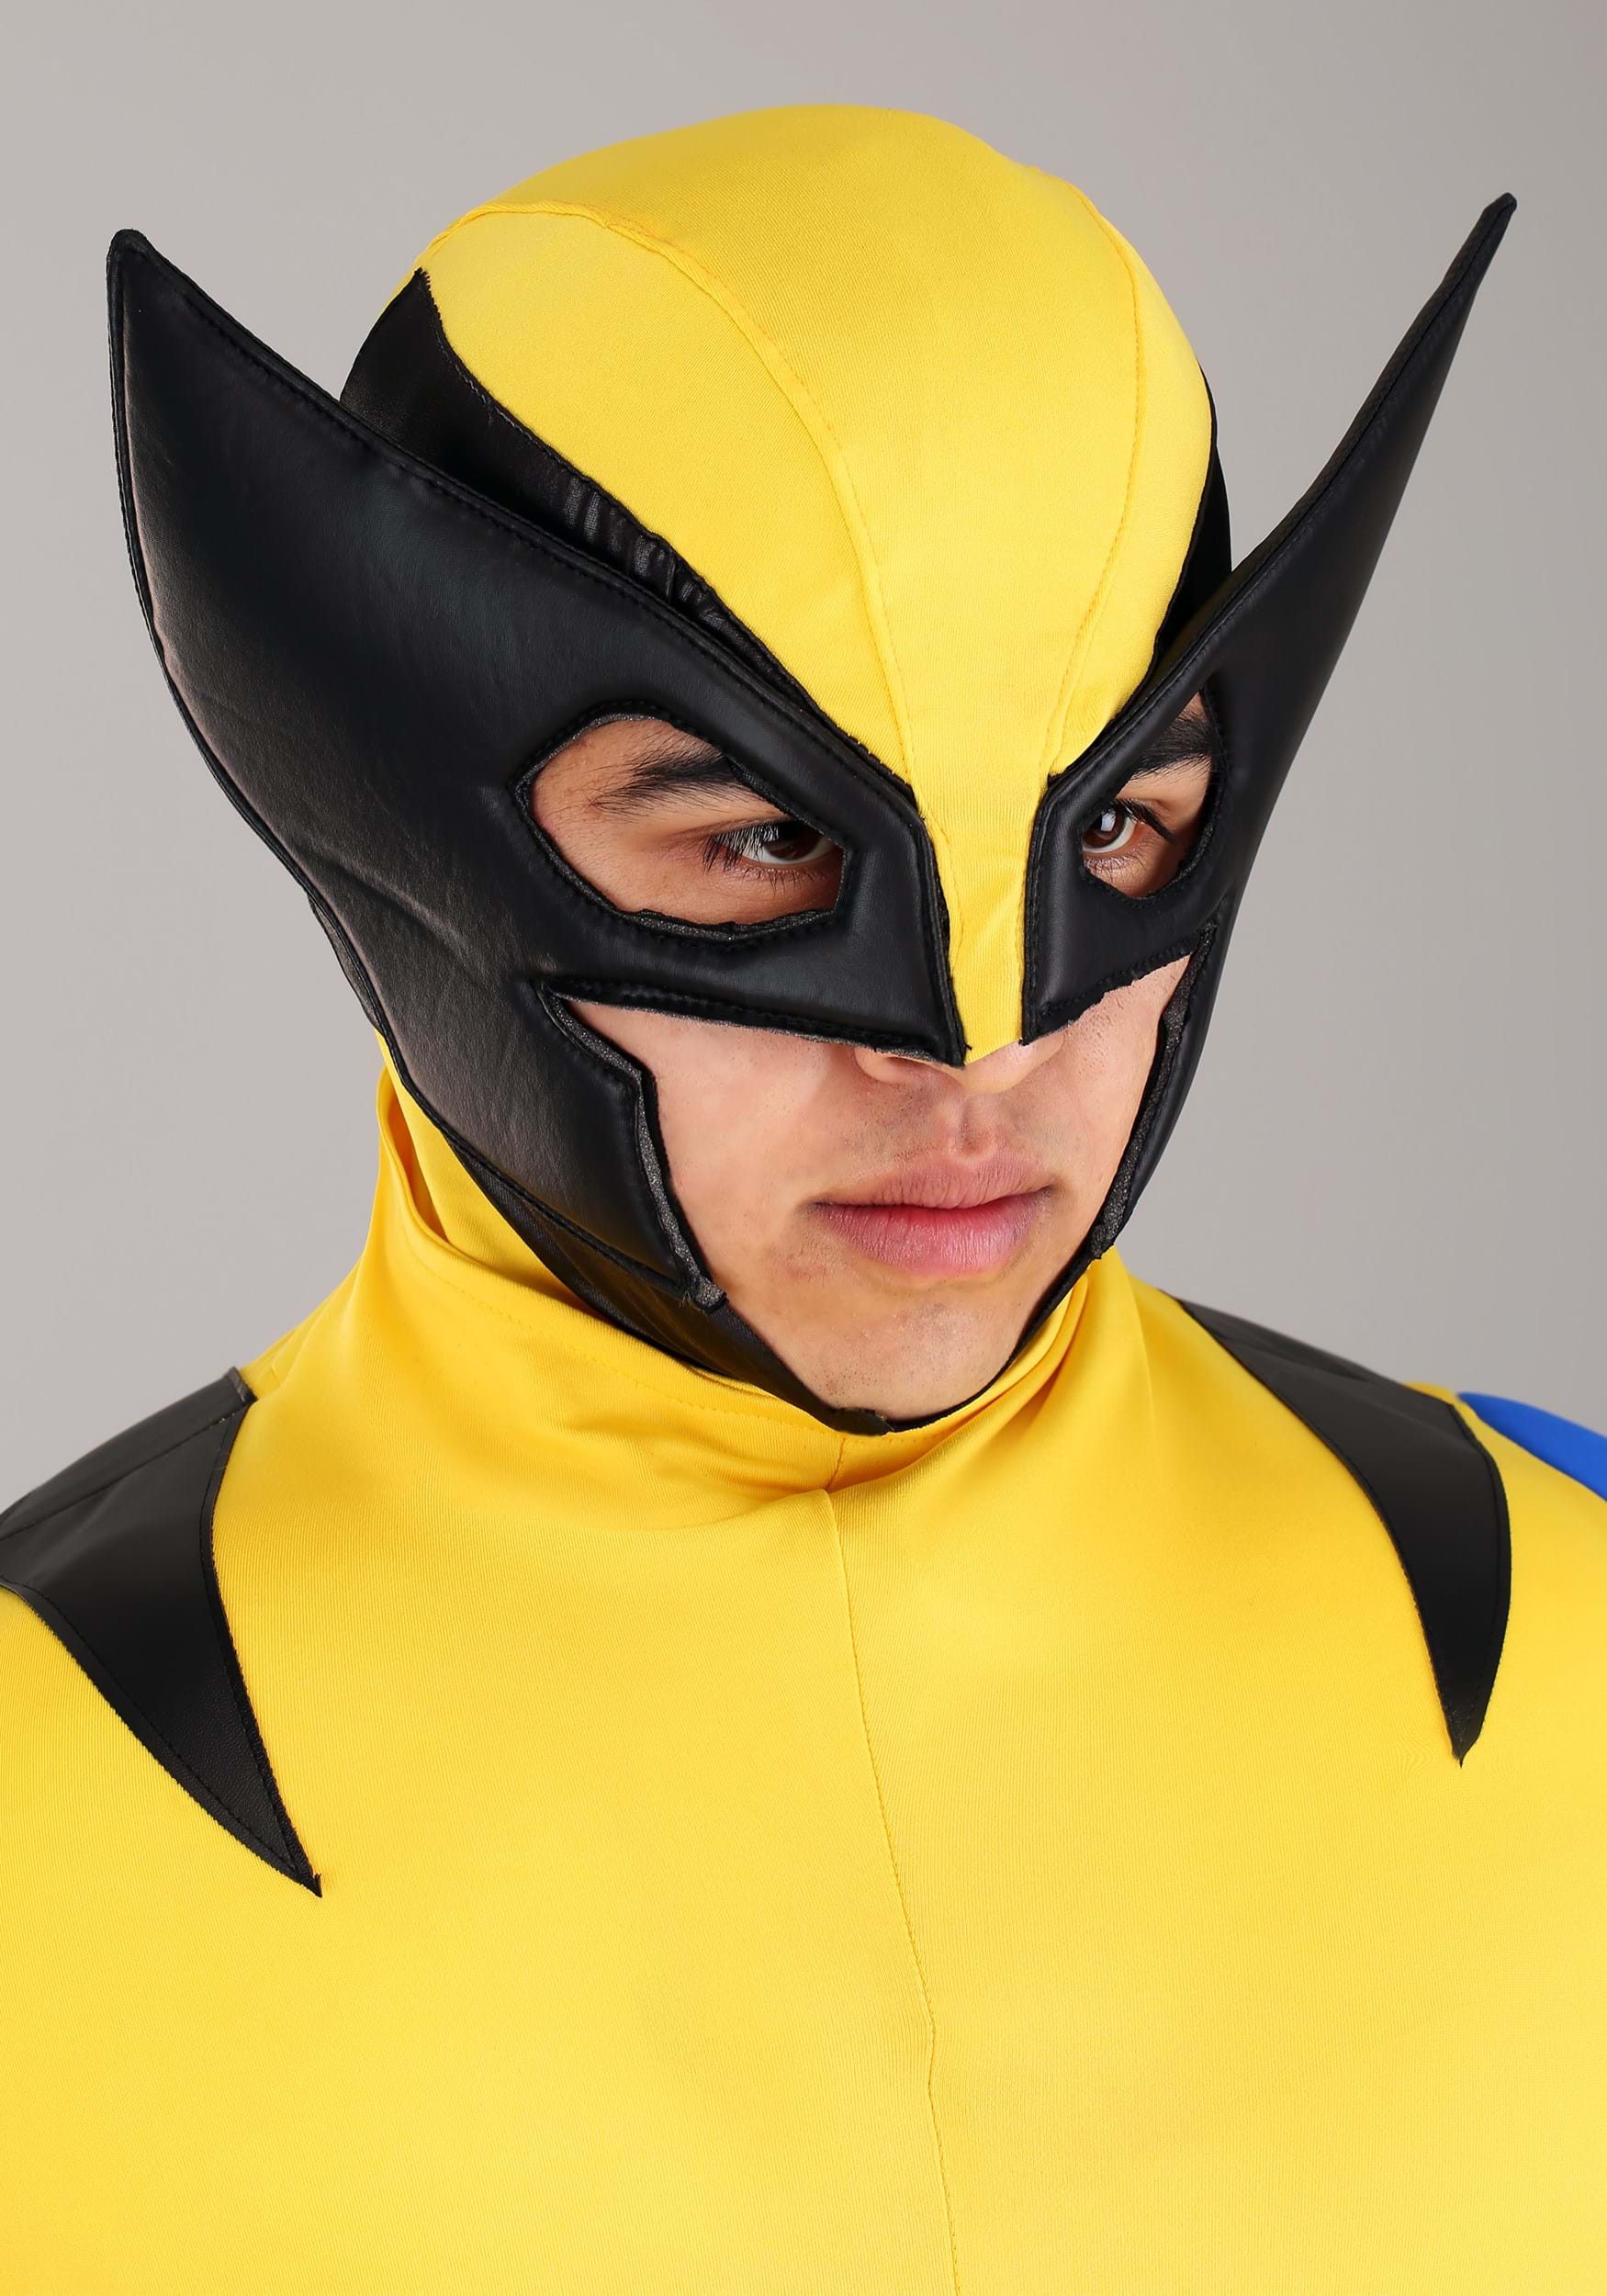 Premium Marvel Adult Wolverine Costume , Wolverine Marvel Costume